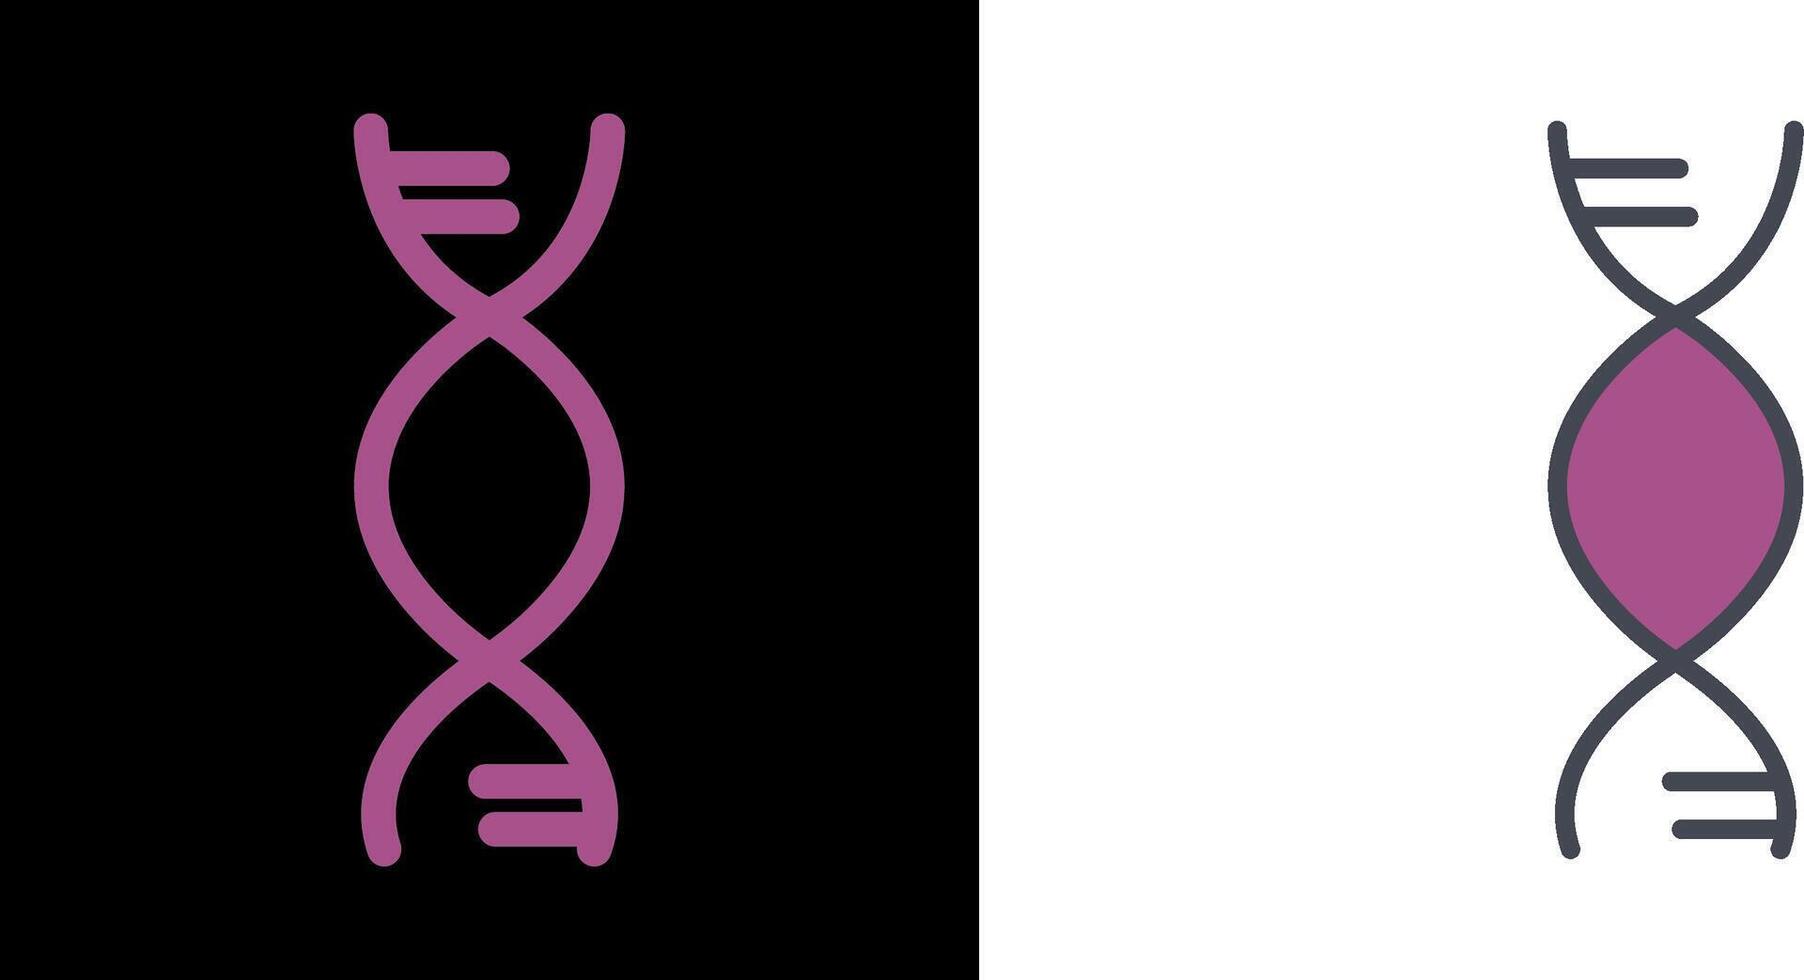 DNA Icon Design vector